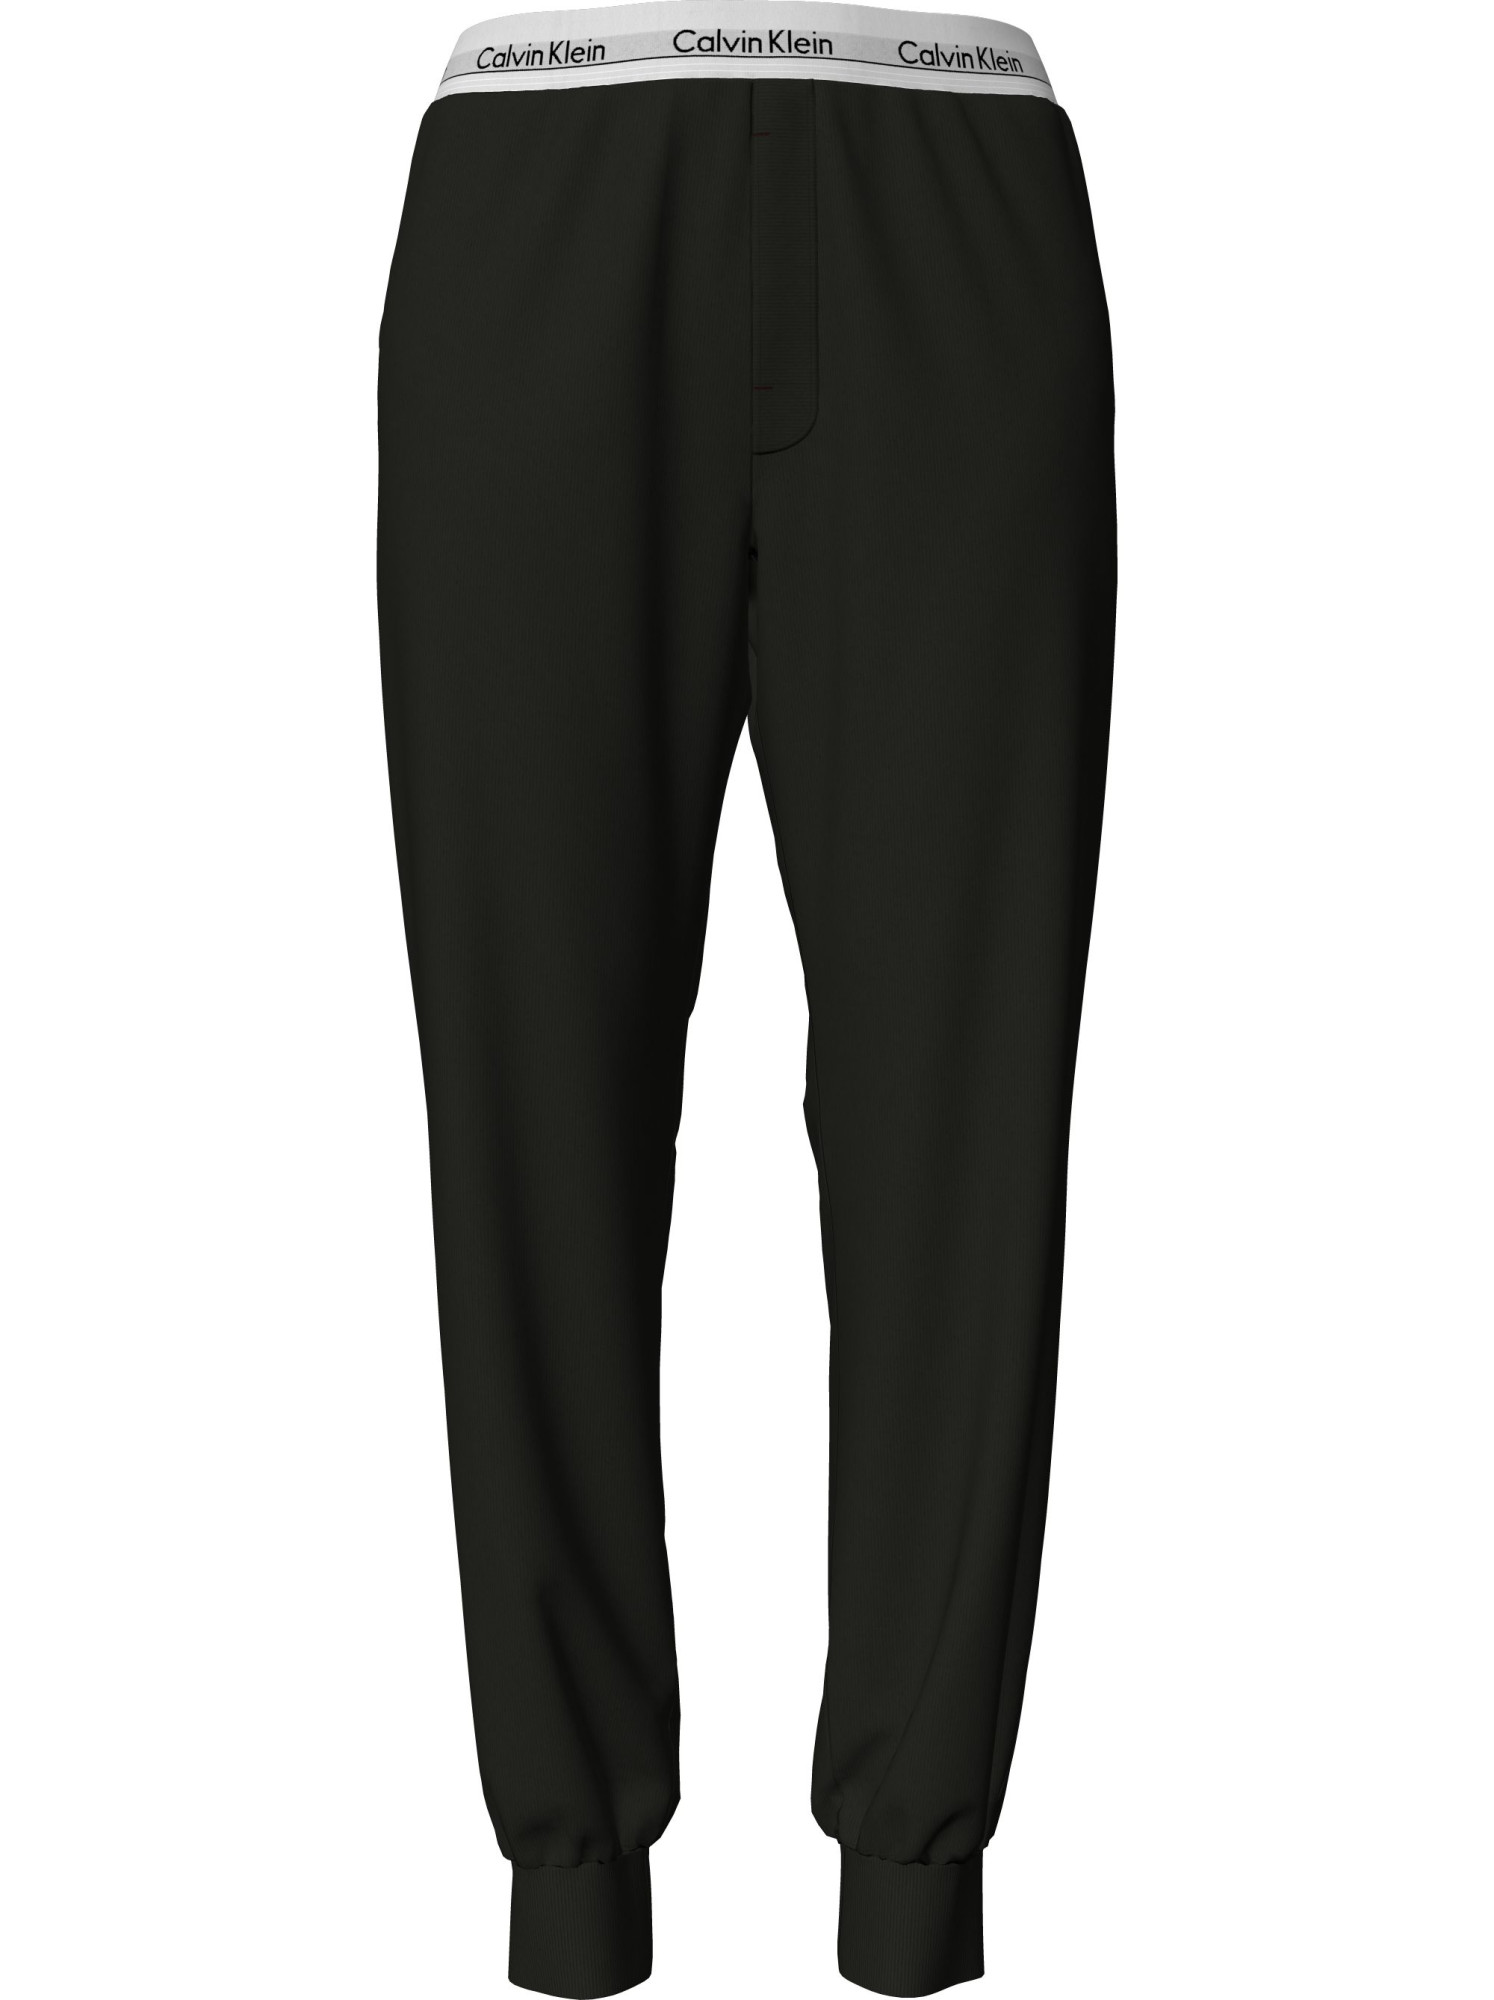 Dámské pyžamové kalhoty Pyjama Pants Modern Cotton 000QS6872EUB1 černá - Calvin Klein L